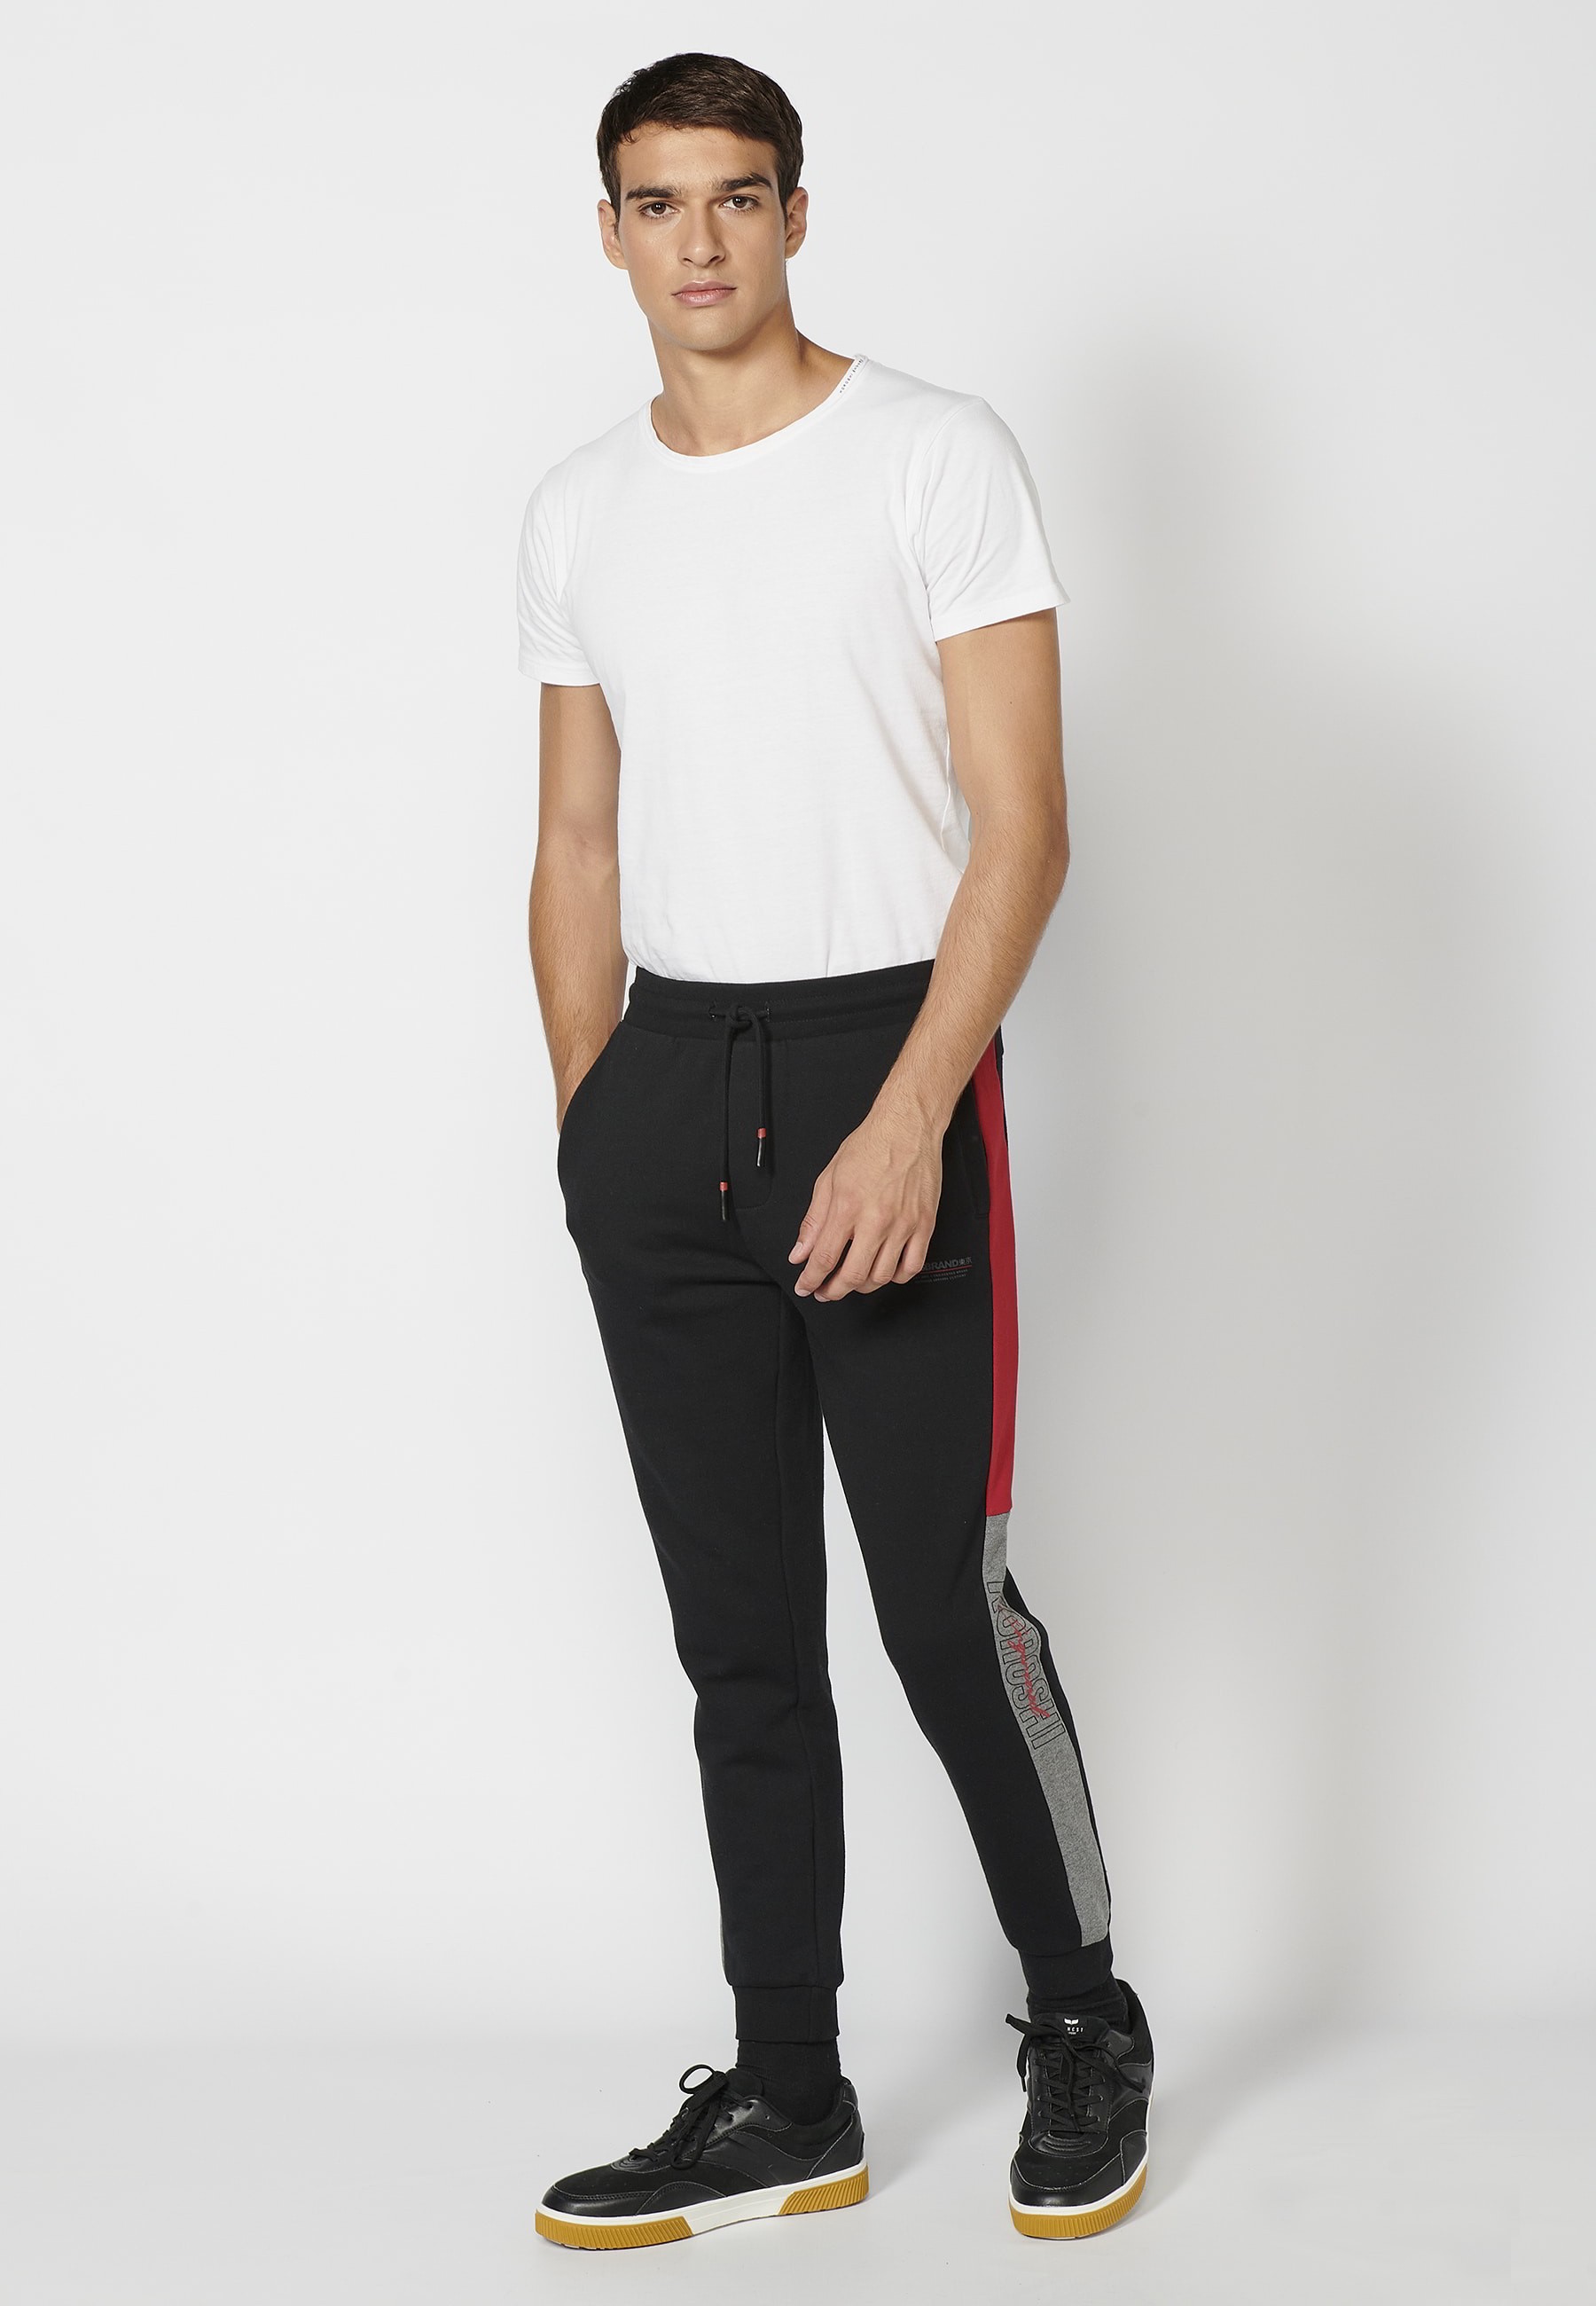 Pantalon de jogging long avec taille élastique réglable, détail